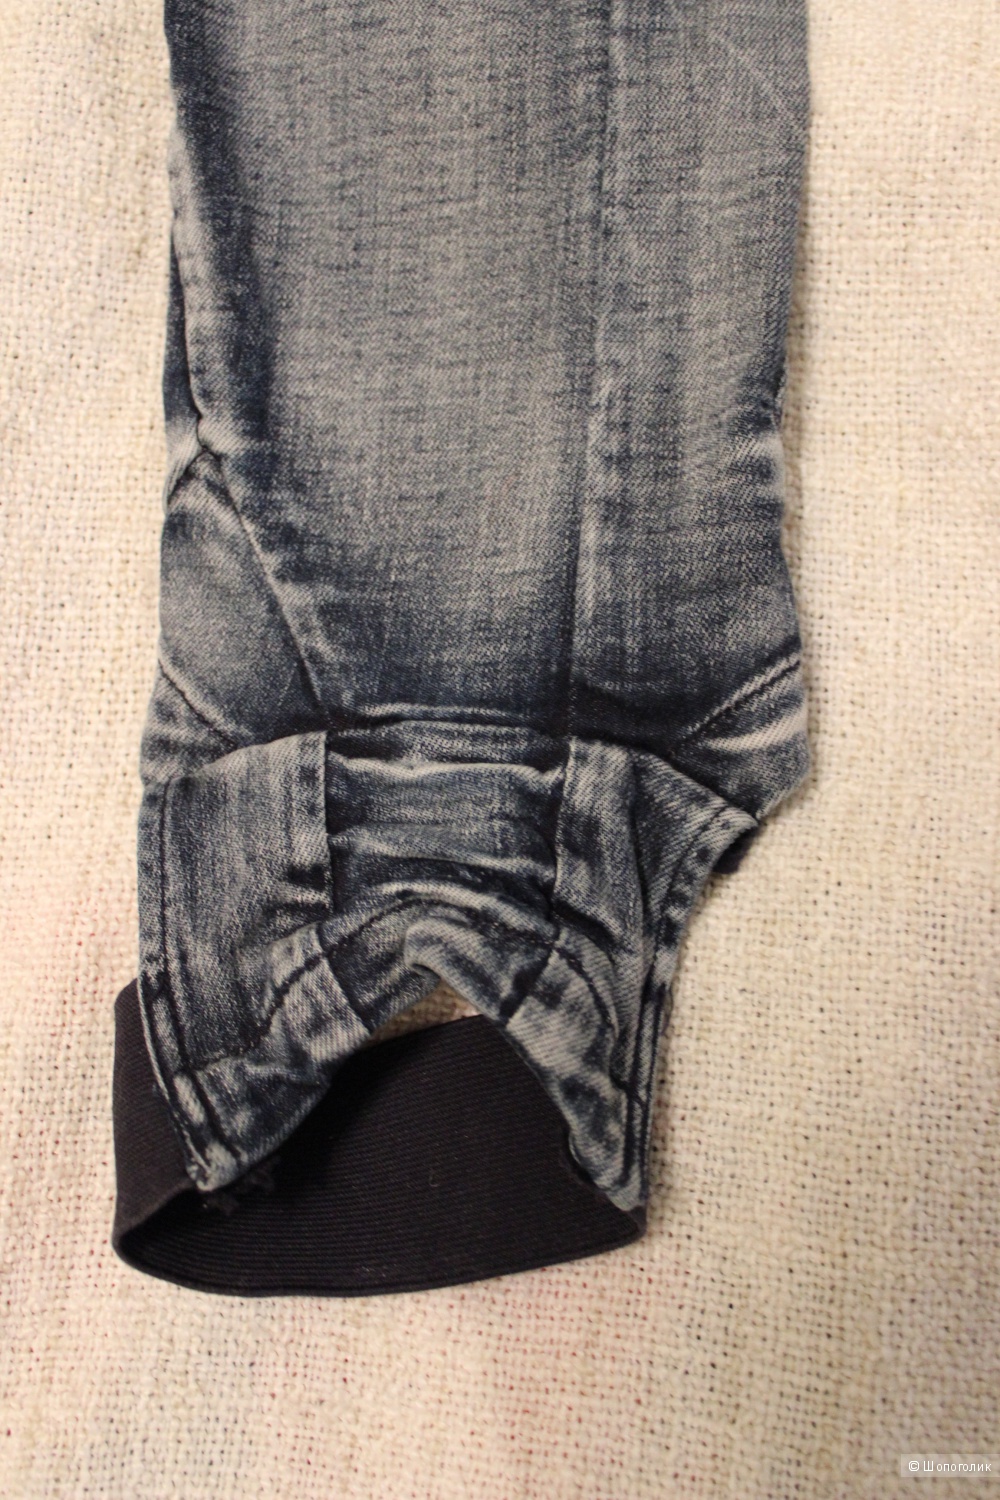 Новые эксцентричные джинсы JENA THEO на 46-48 размер (UK12).